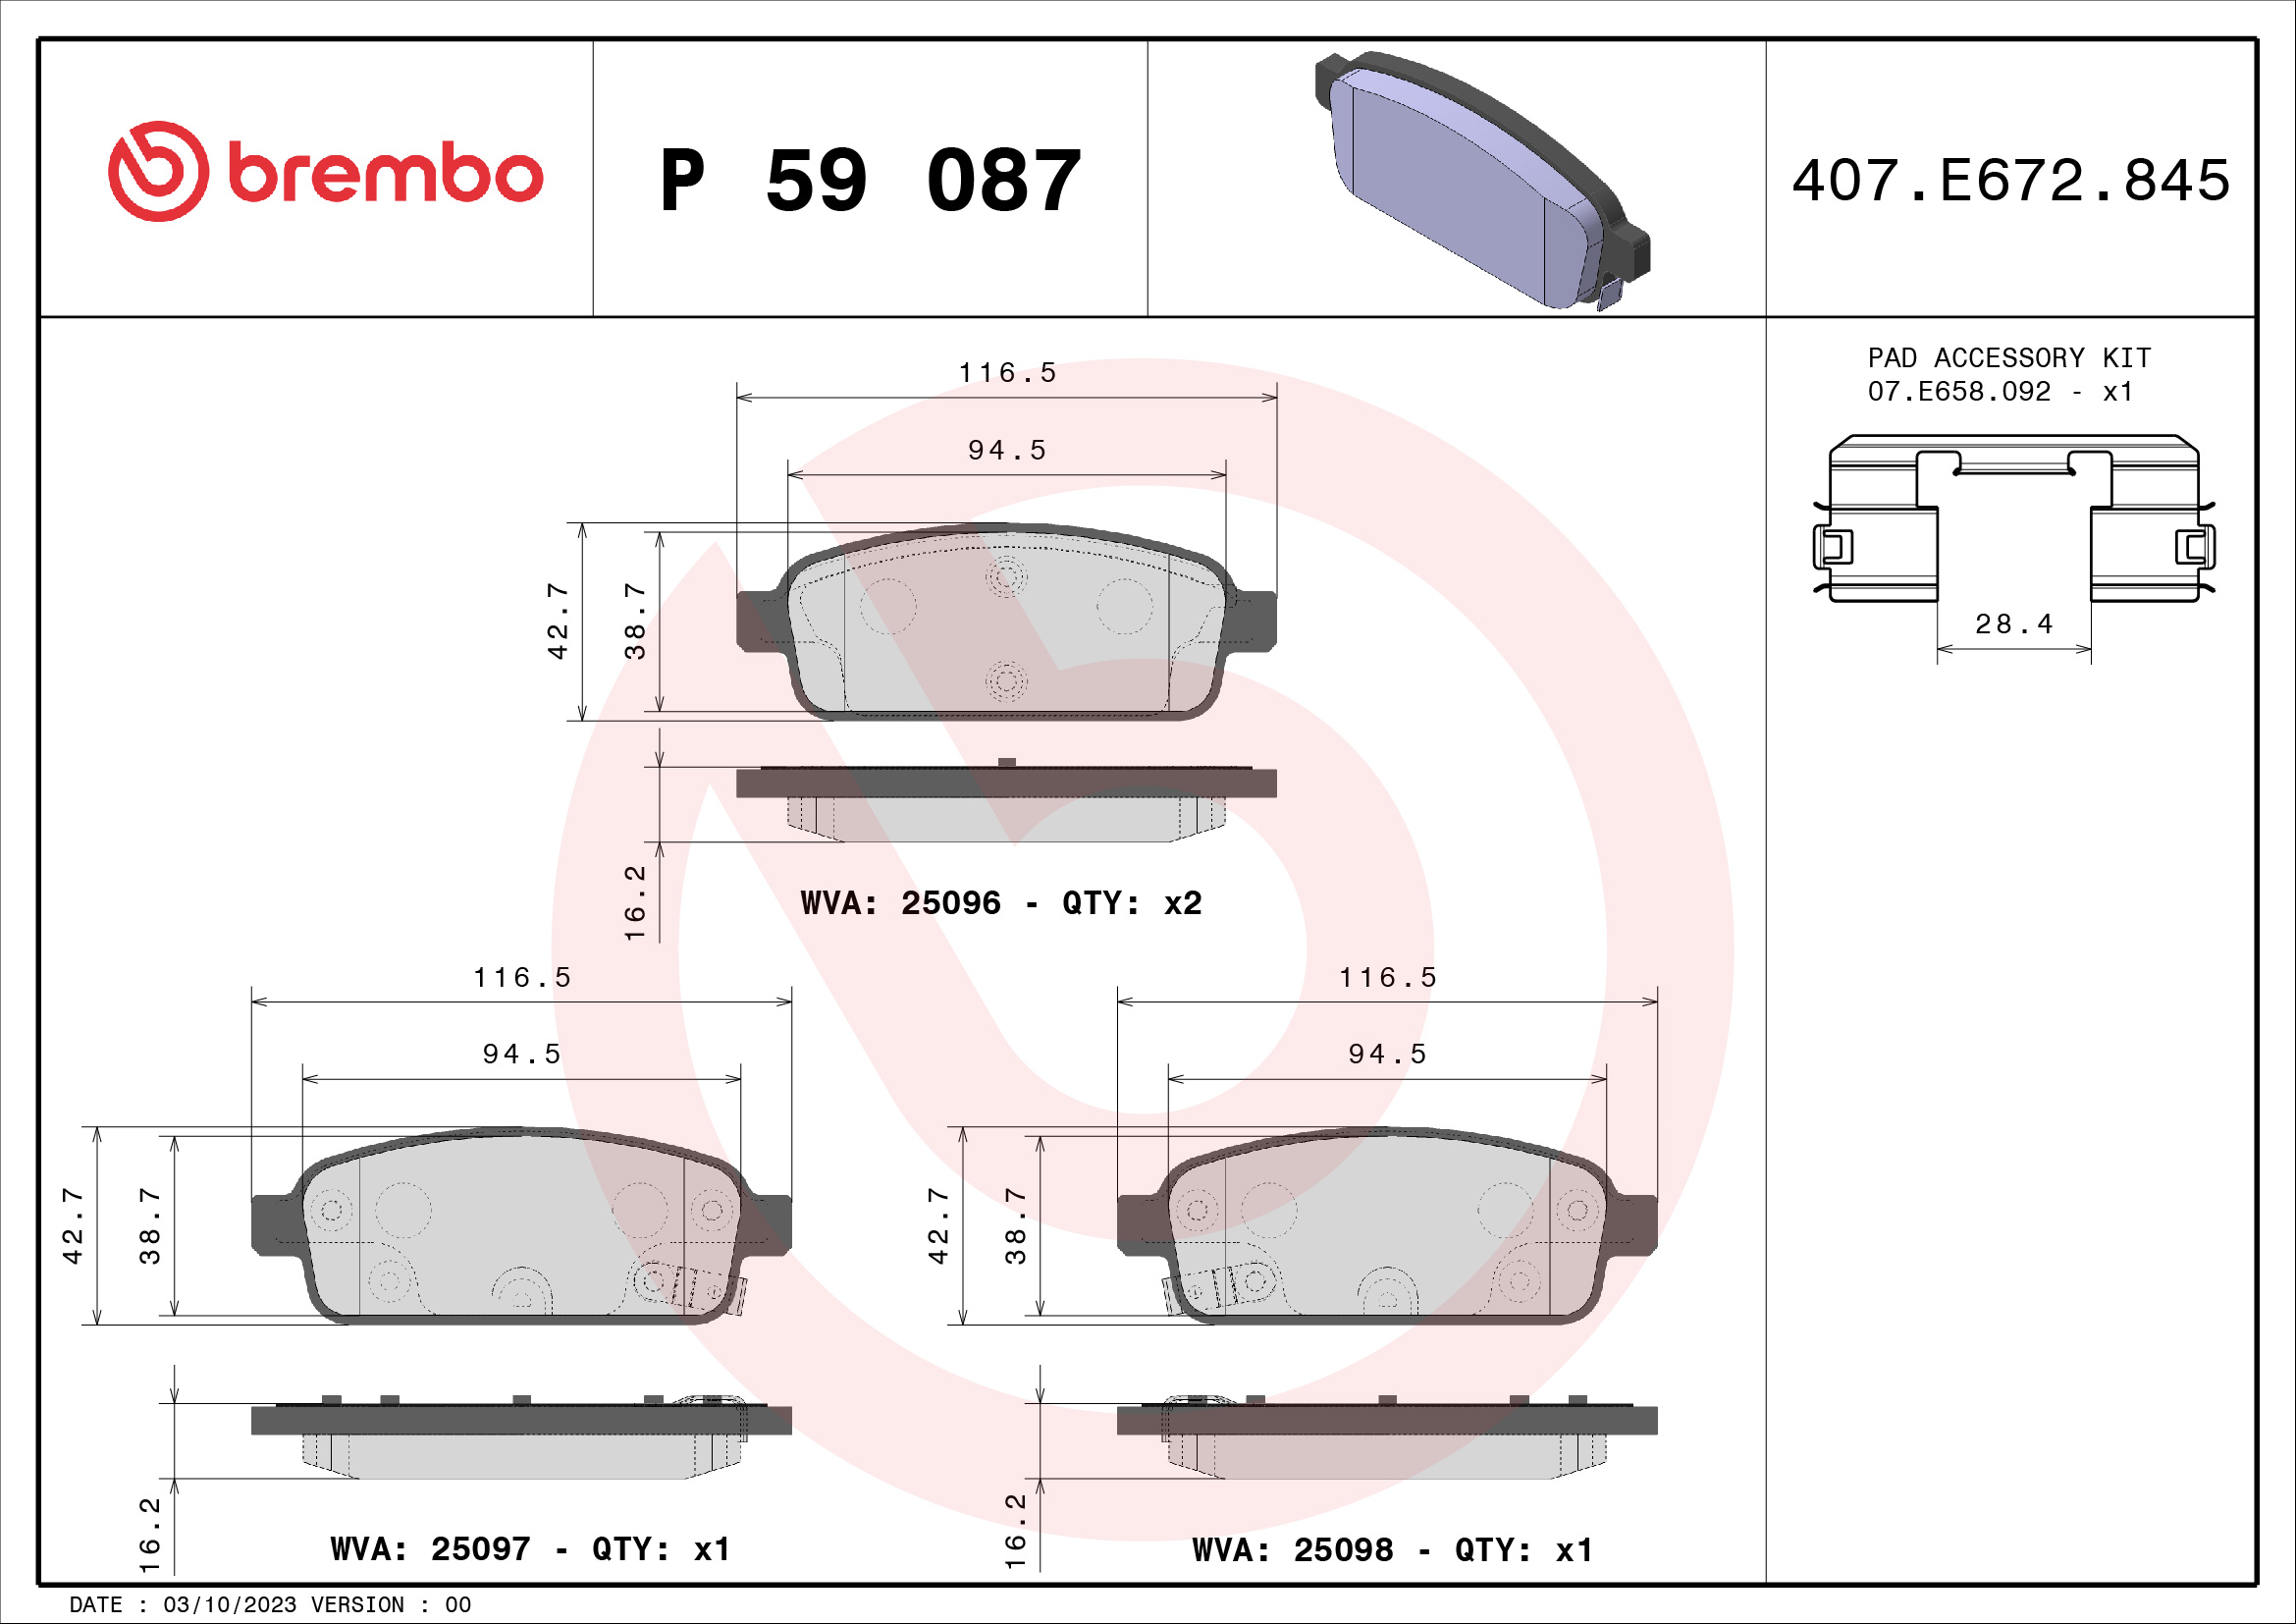 BREMBO P 59 087 Kit...